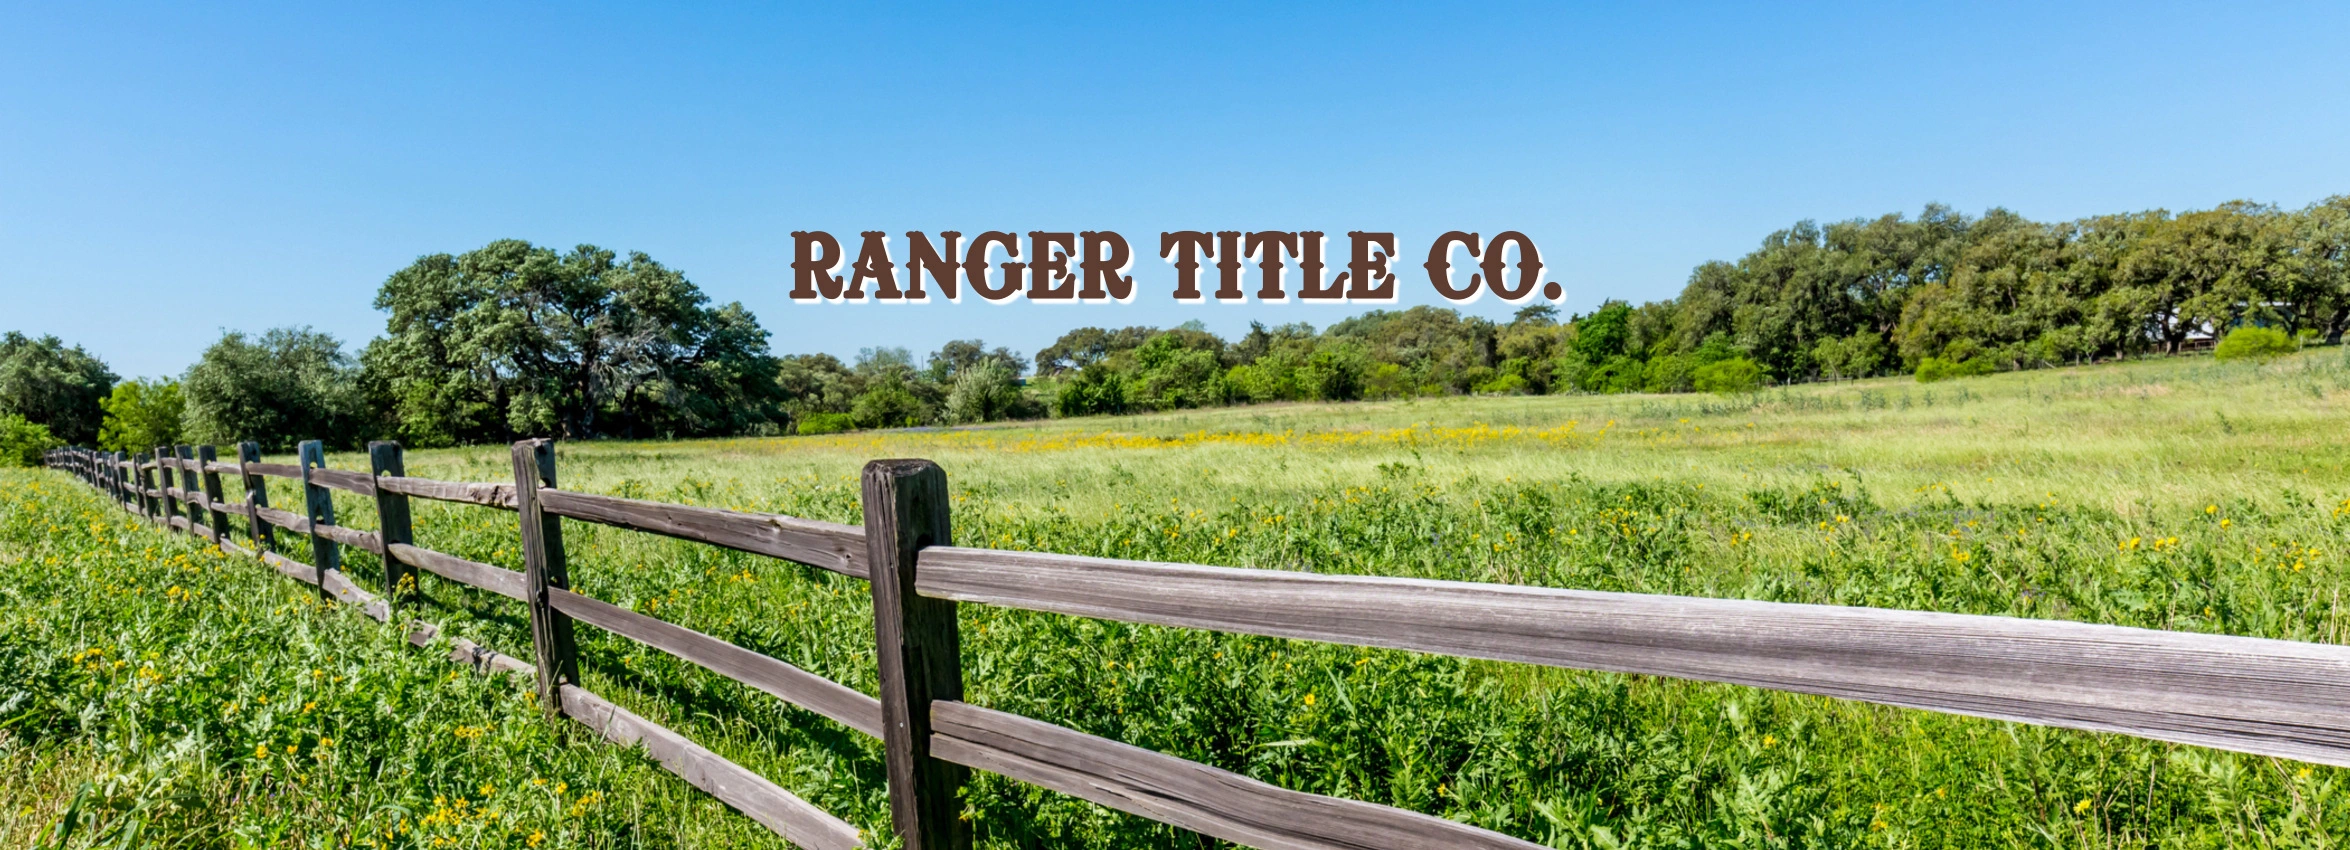 Ranger-Title-Co_Desktop_ET